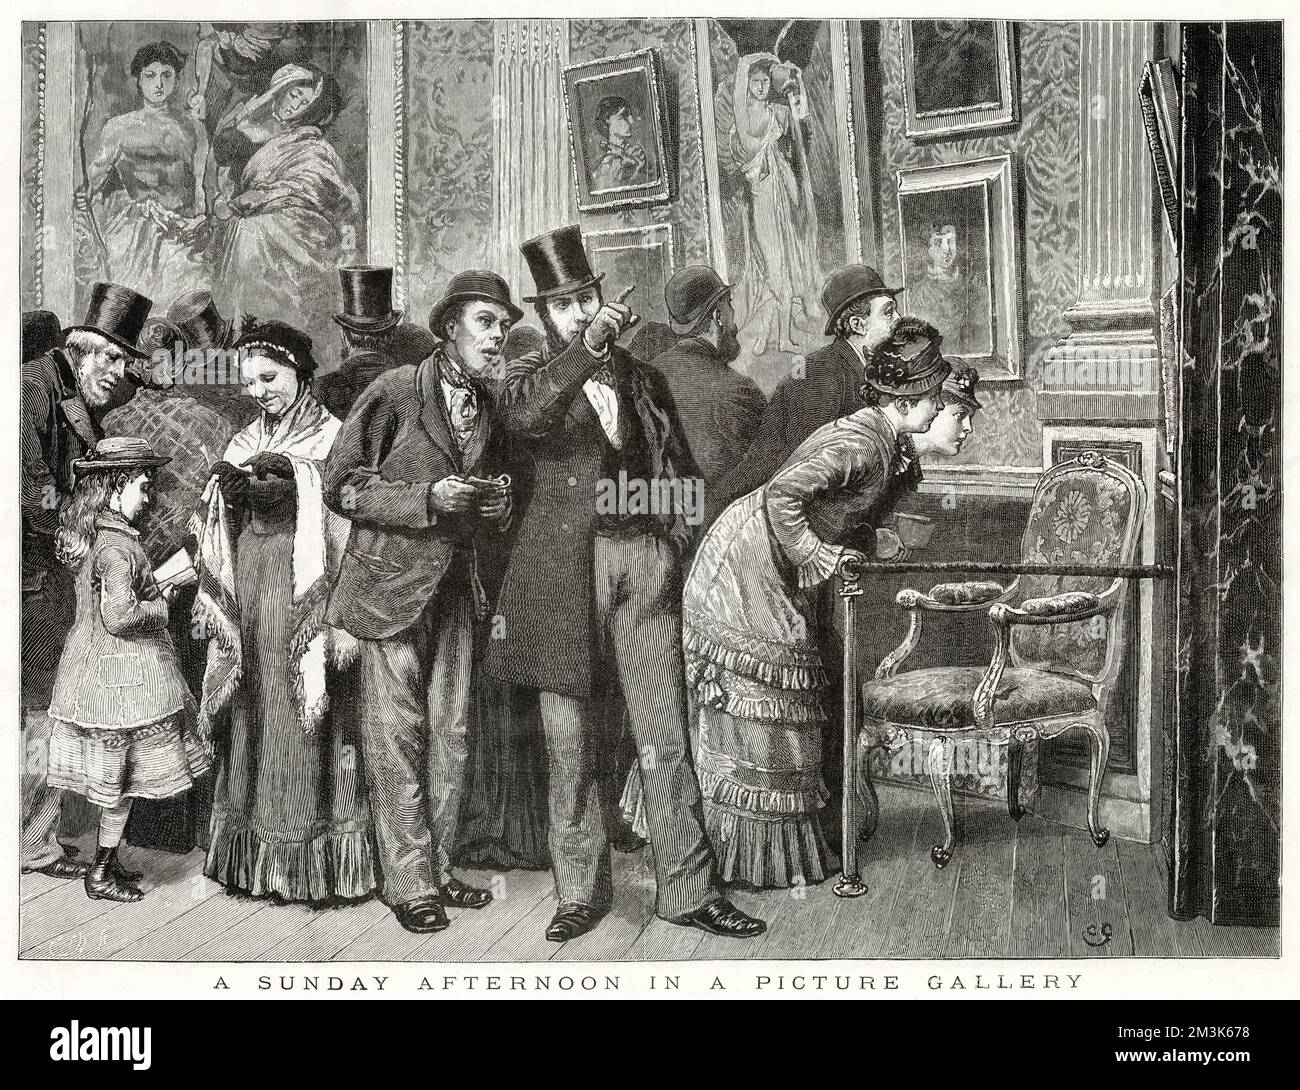 Eine Gruppe viktorianischer Briten bewundert die Gemälde in einer Kunstgalerie, 1879. Die Gravur trug ursprünglich den Titel „Sonntagnachmittag in einer Bildergalerie“ und wurde „vom Leben ertränkt“. Stockfoto